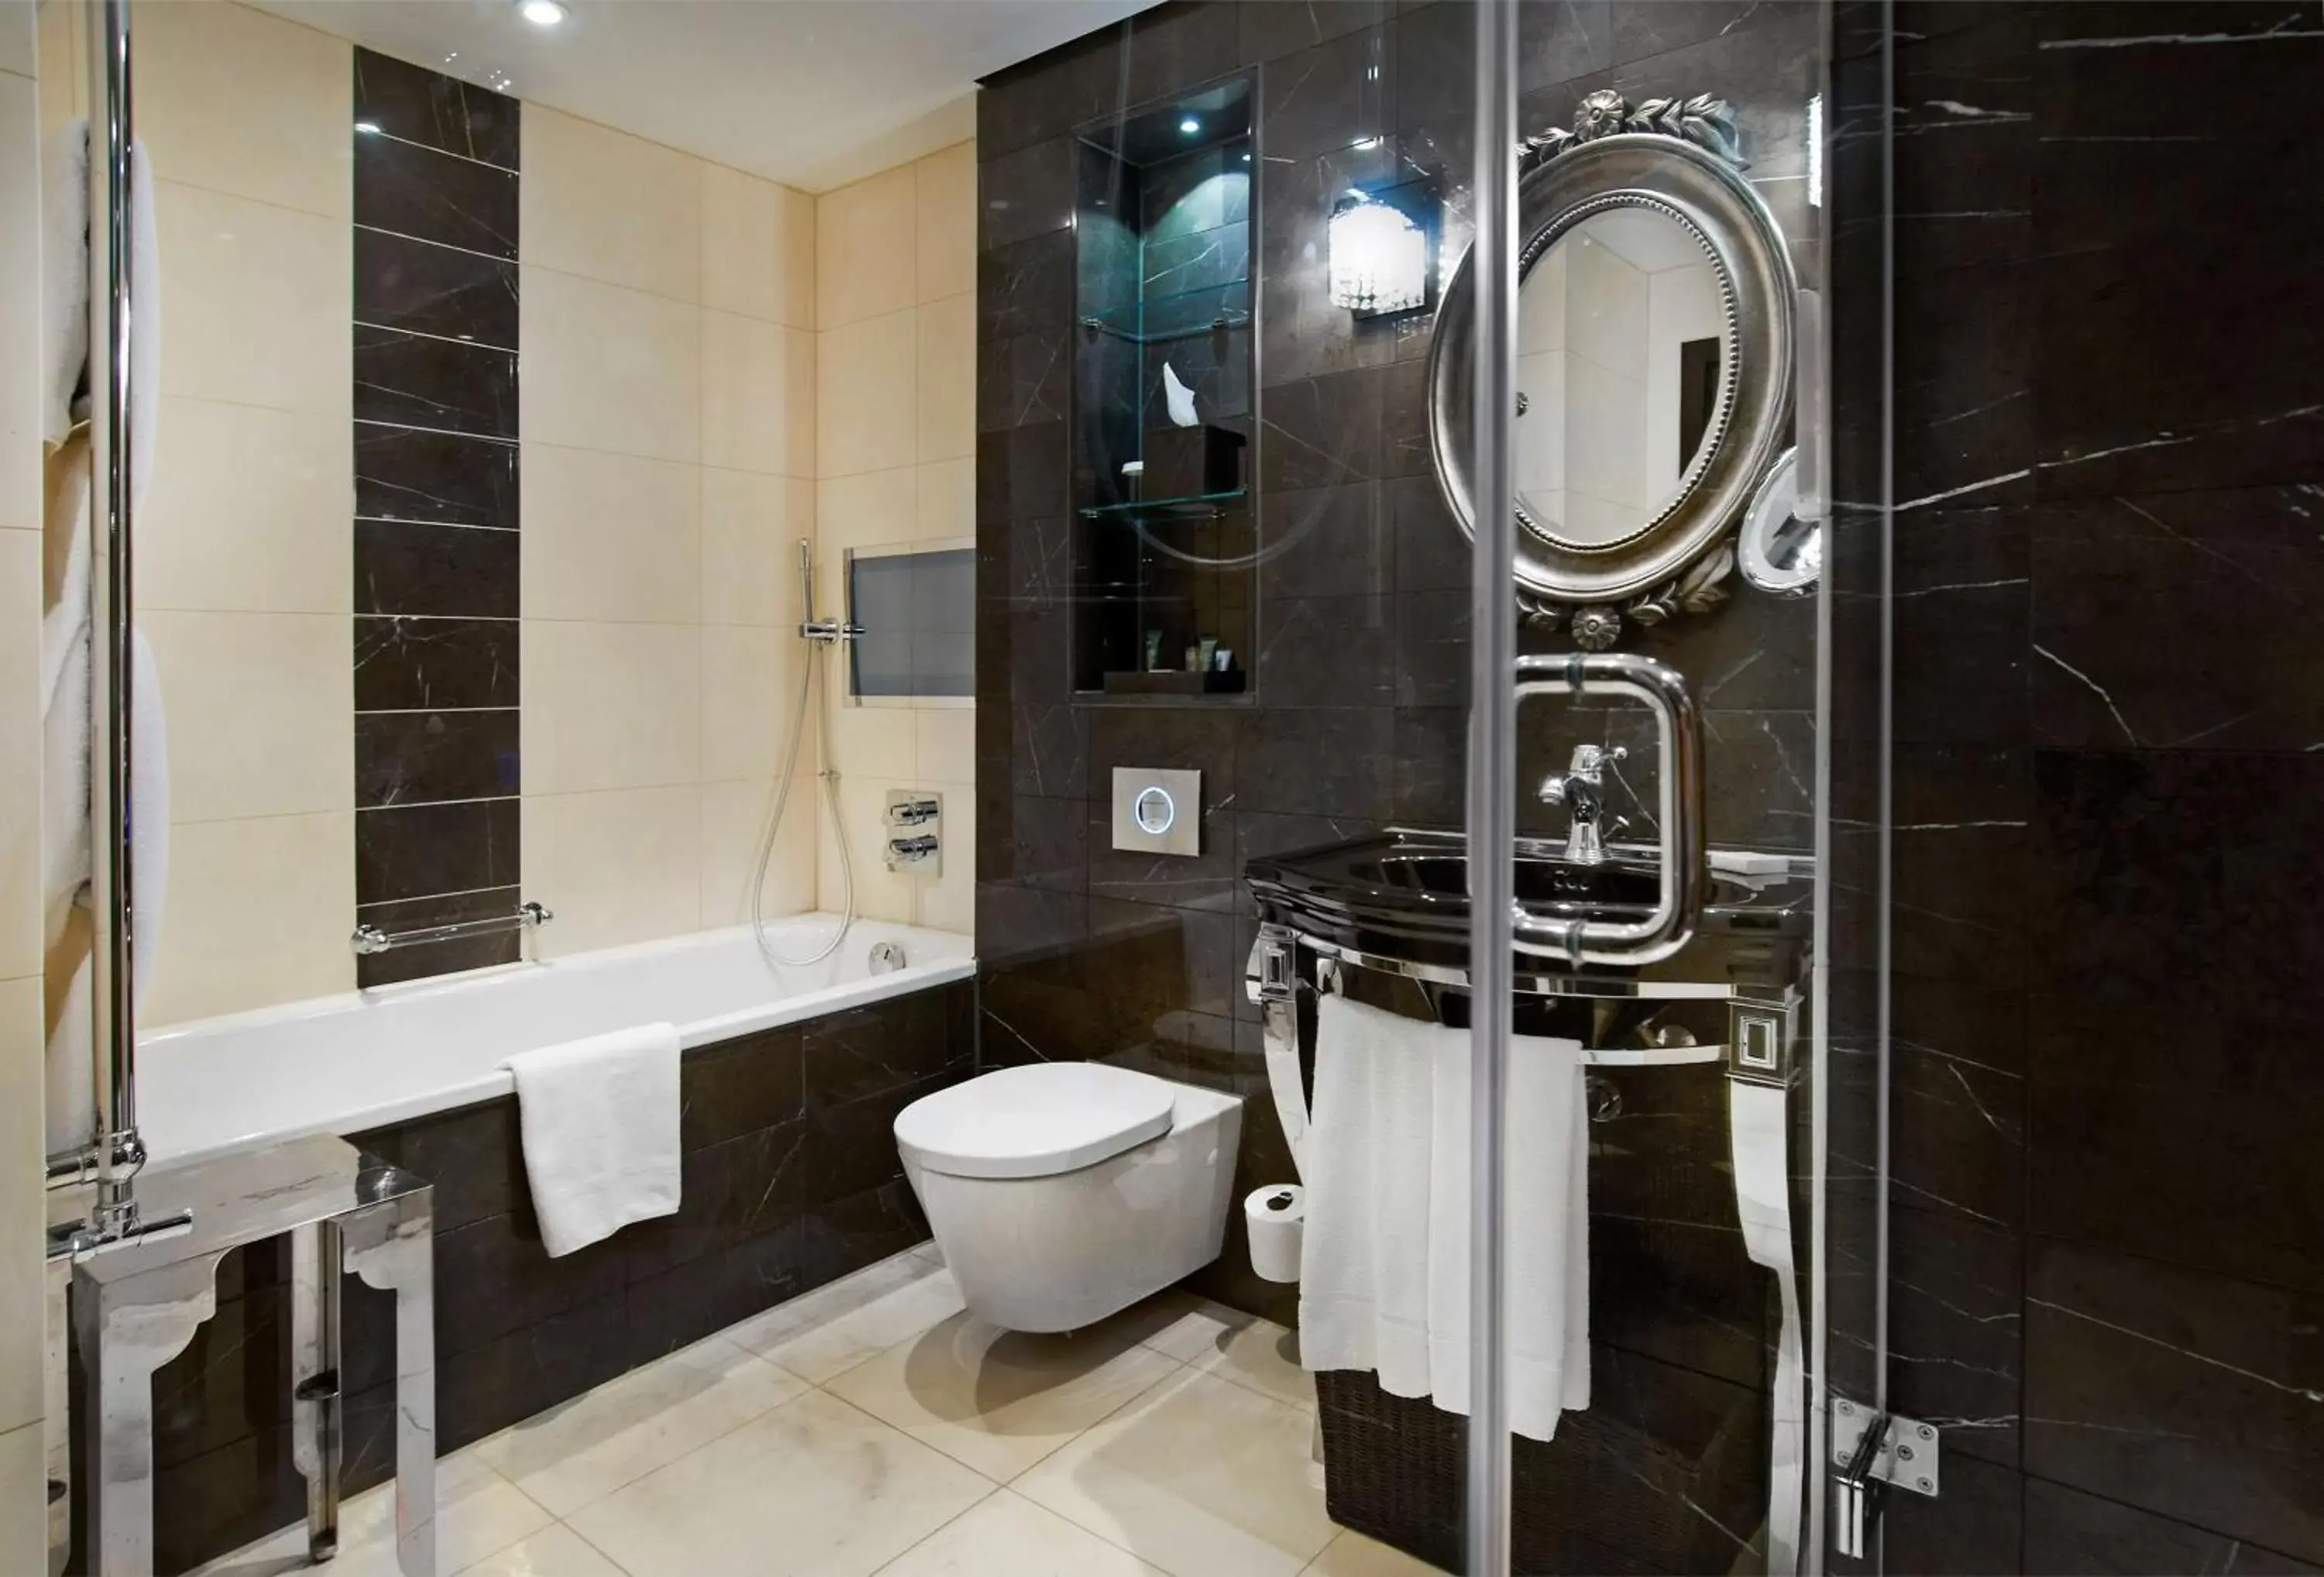 Bedroom, Bathroom in Hilton London Syon Park